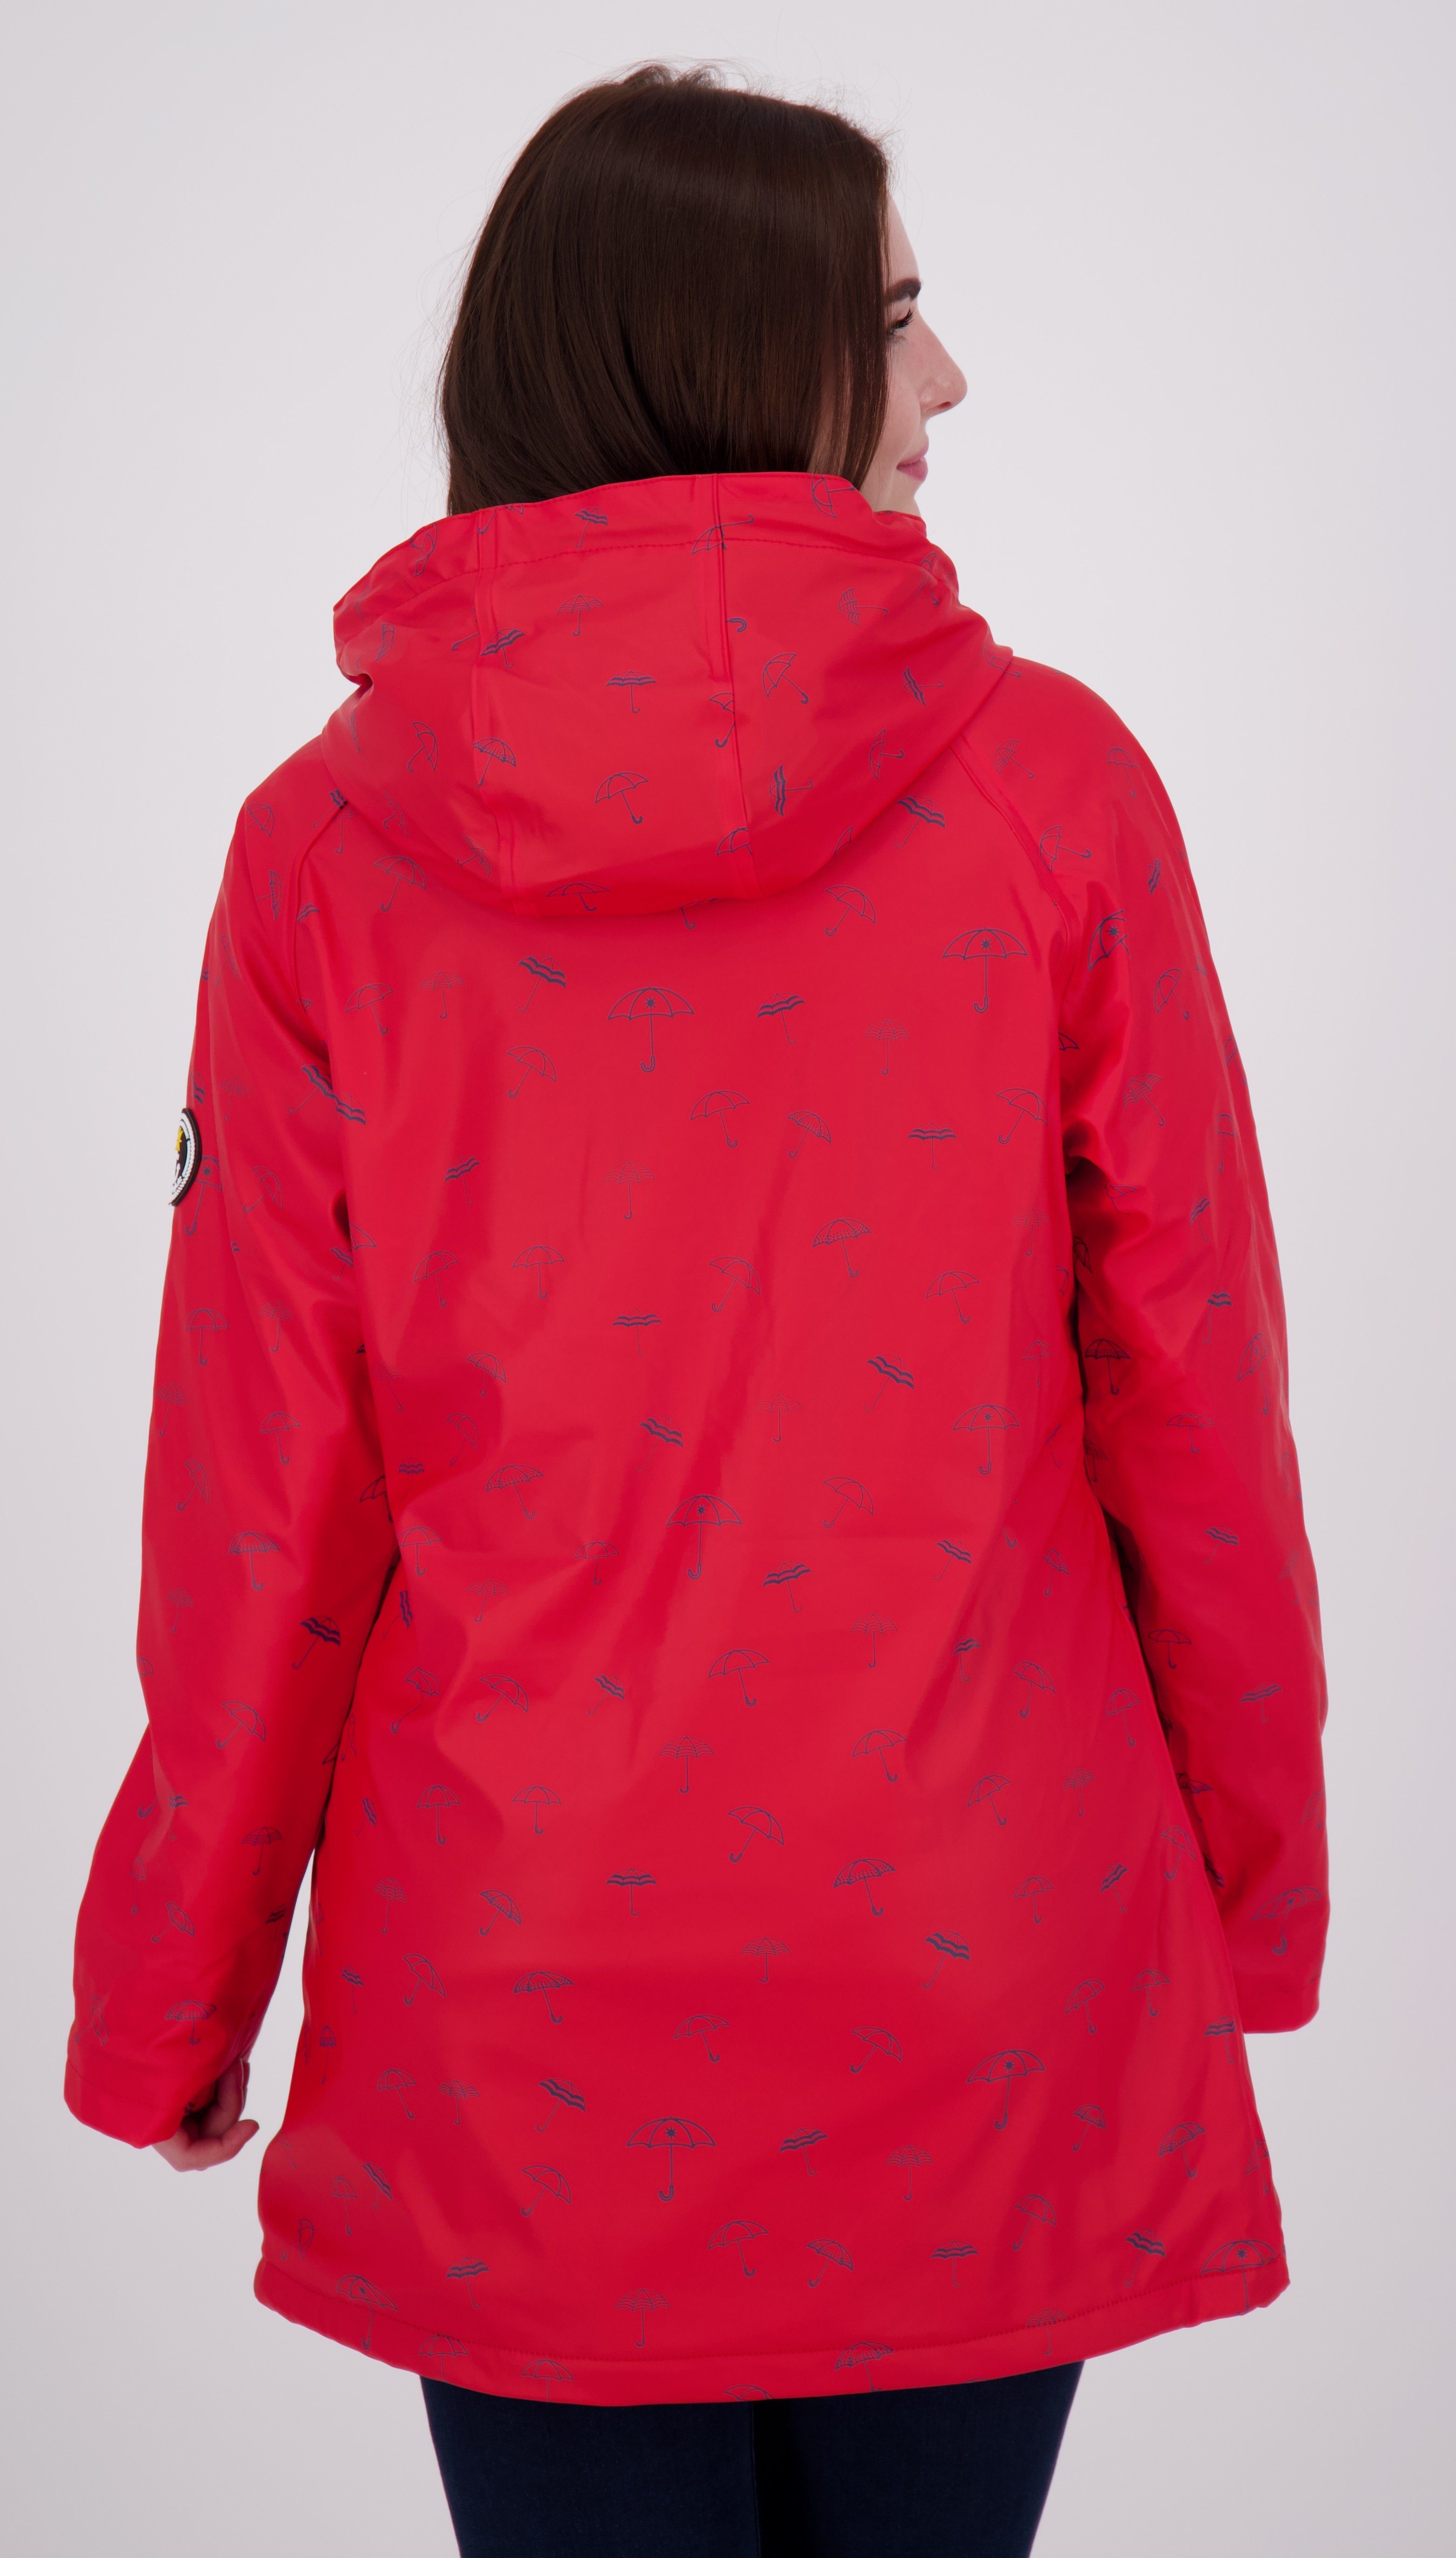 auch Regenjacke in DEPROC CS Friesennerz Active #ankerglutmeer WOMEN erhältlich Größen red Großen